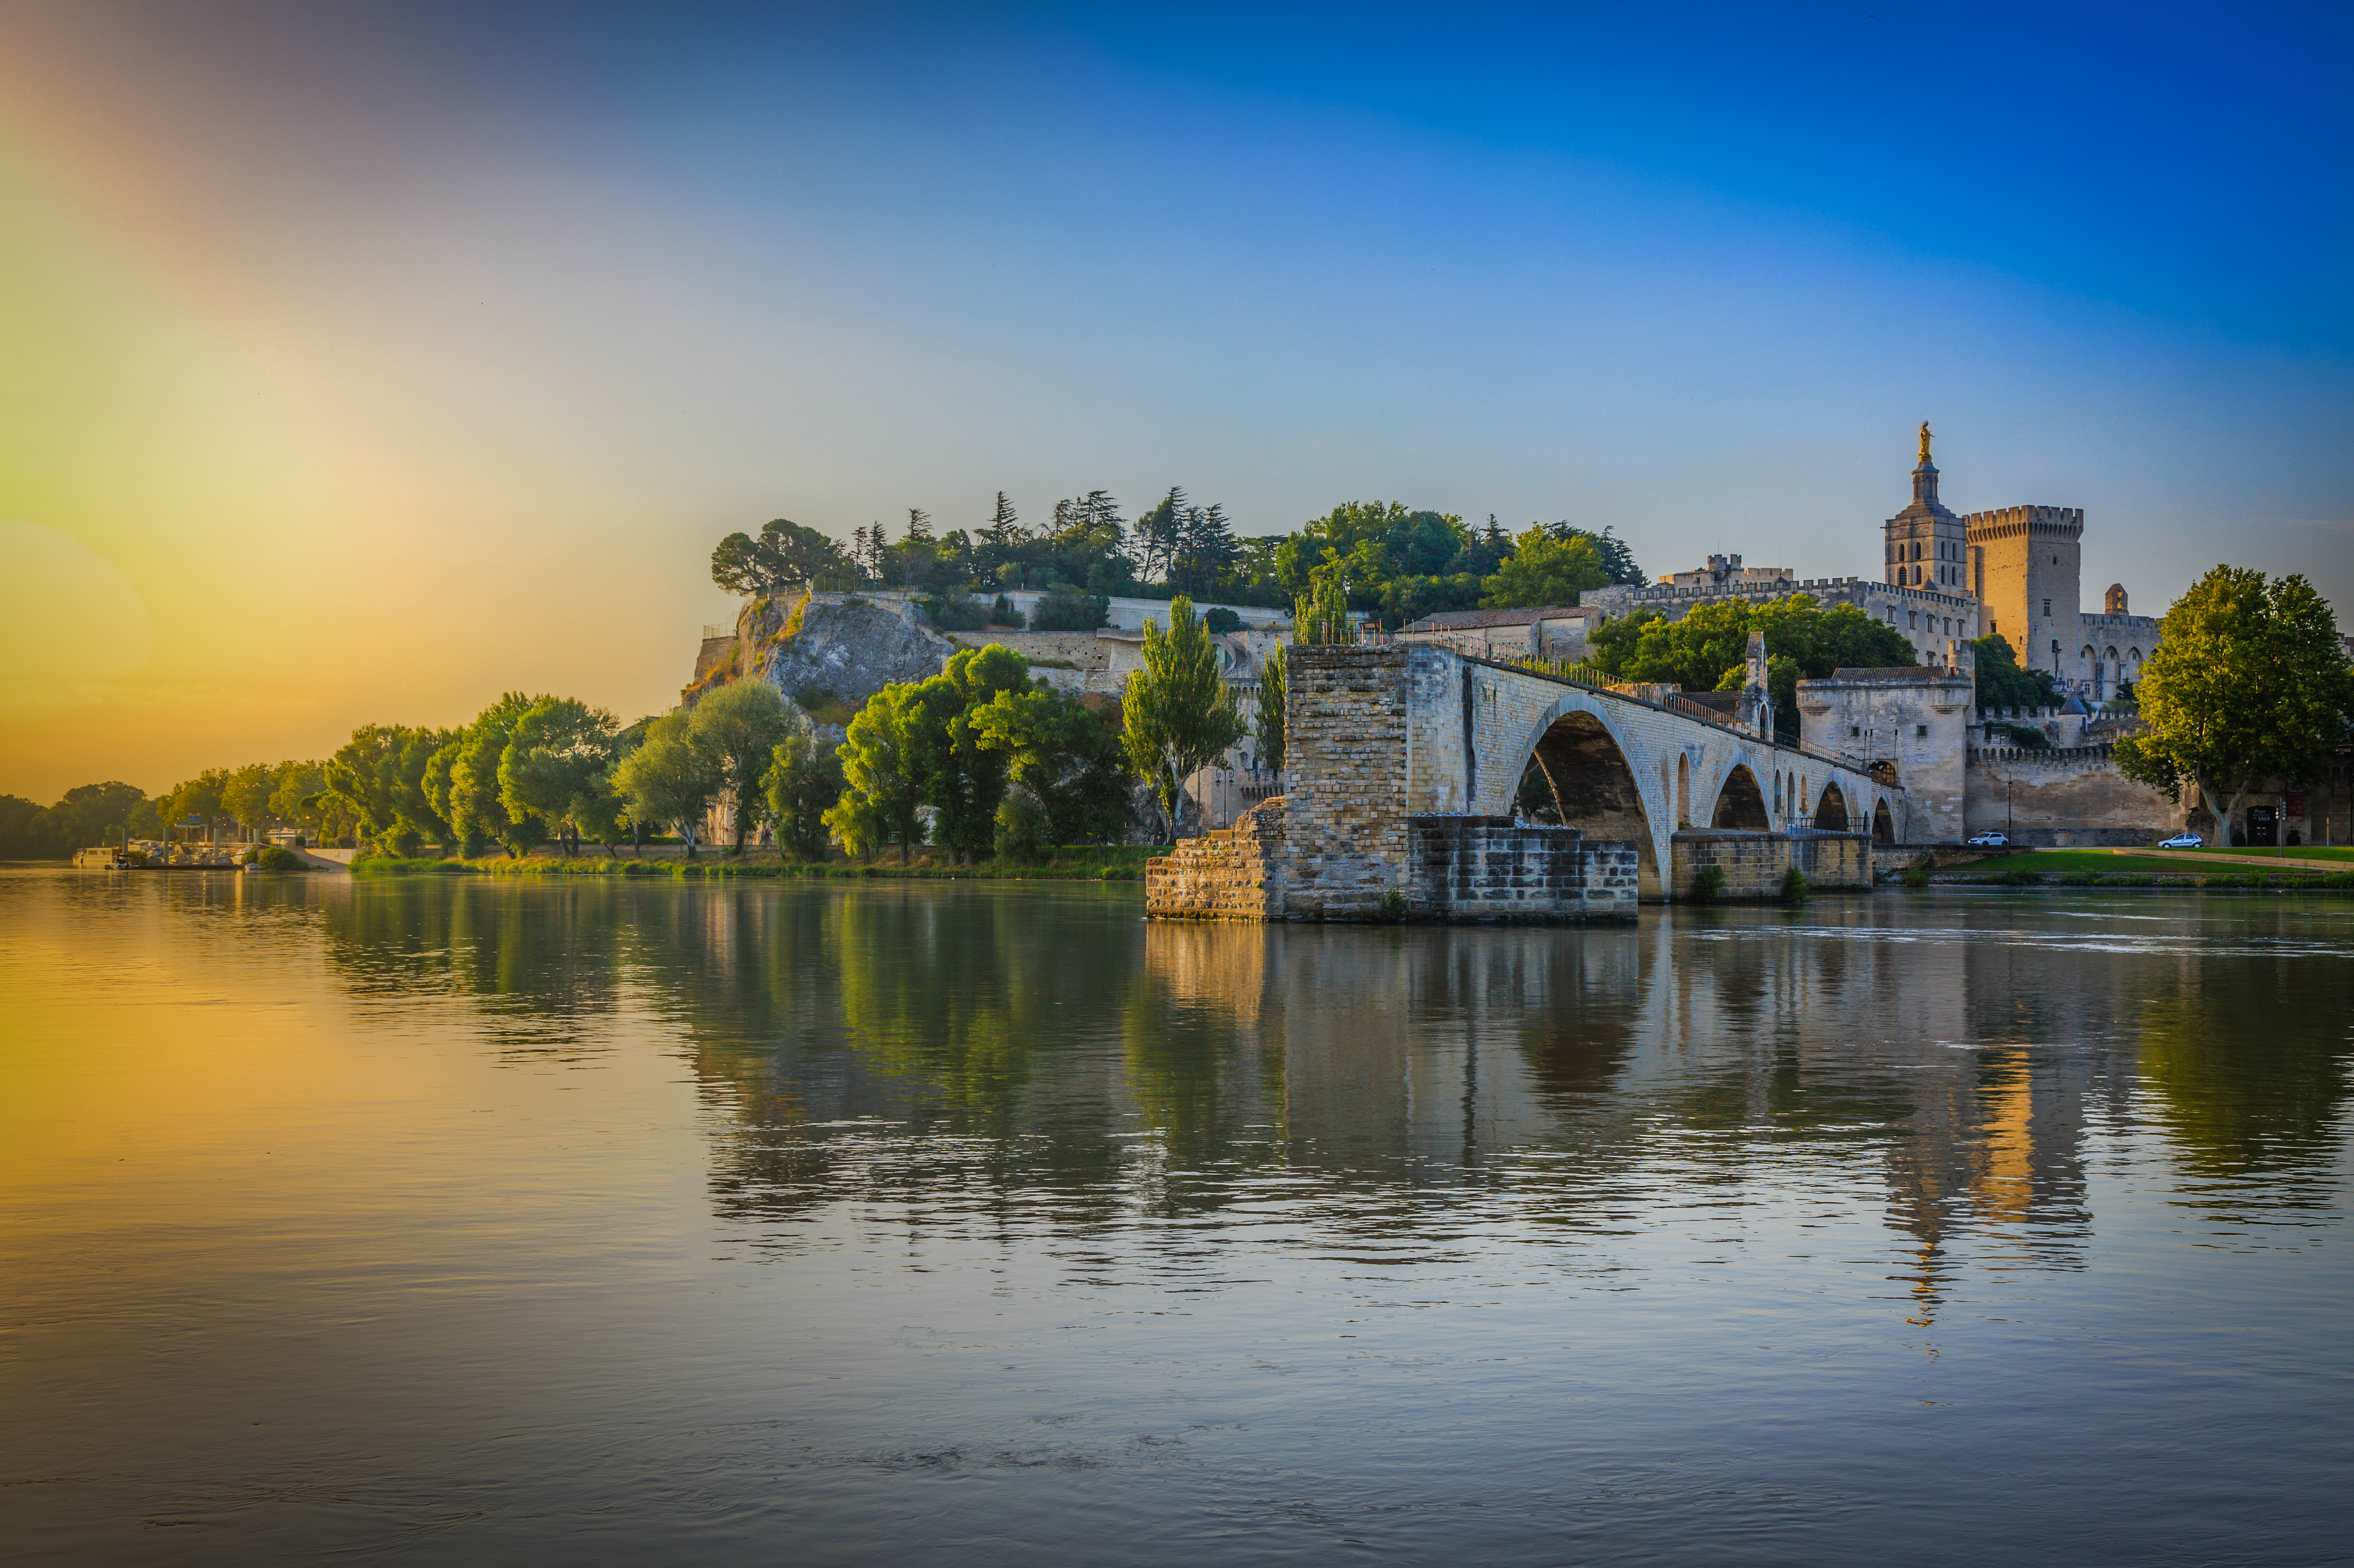 La liste des choses à faire ou à voir en Avignon